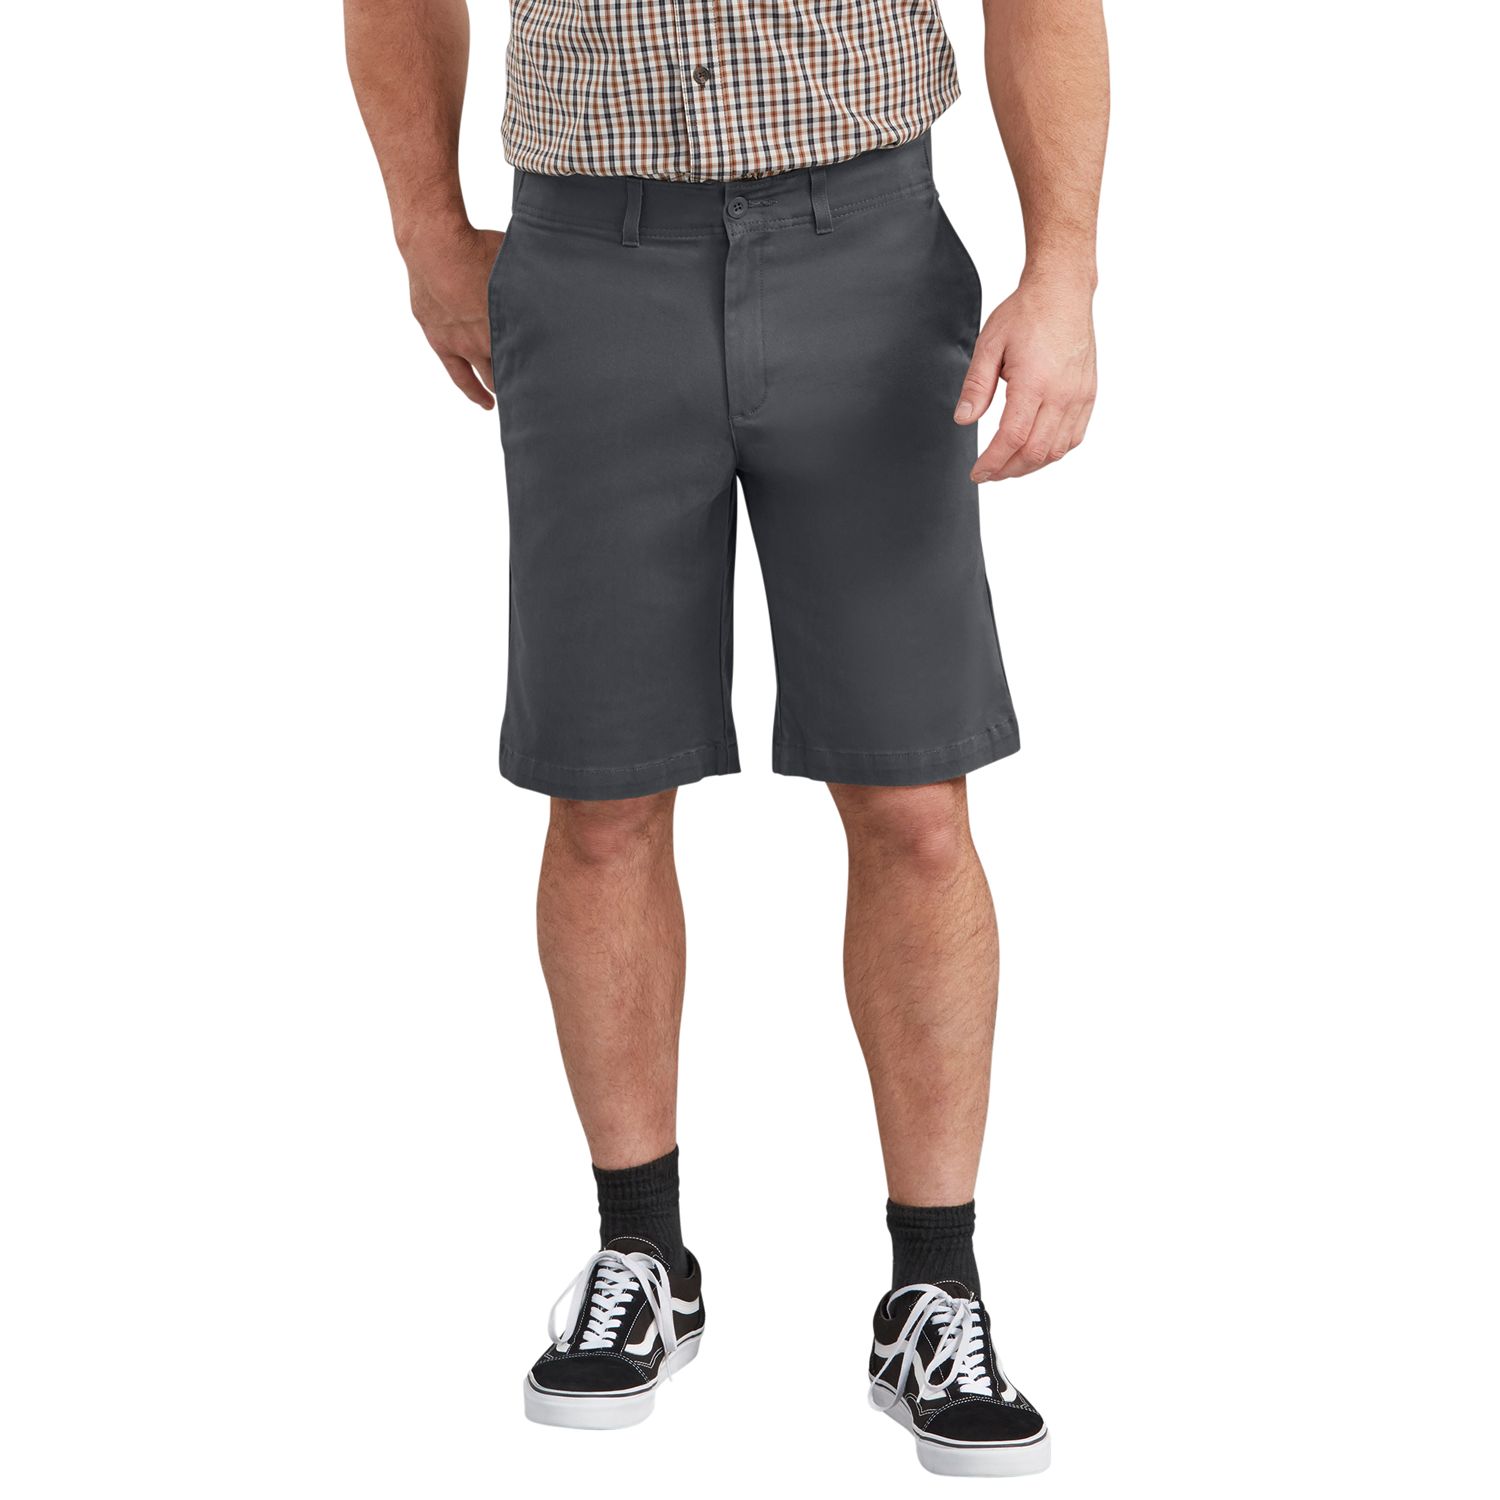 28 inch waist work shorts